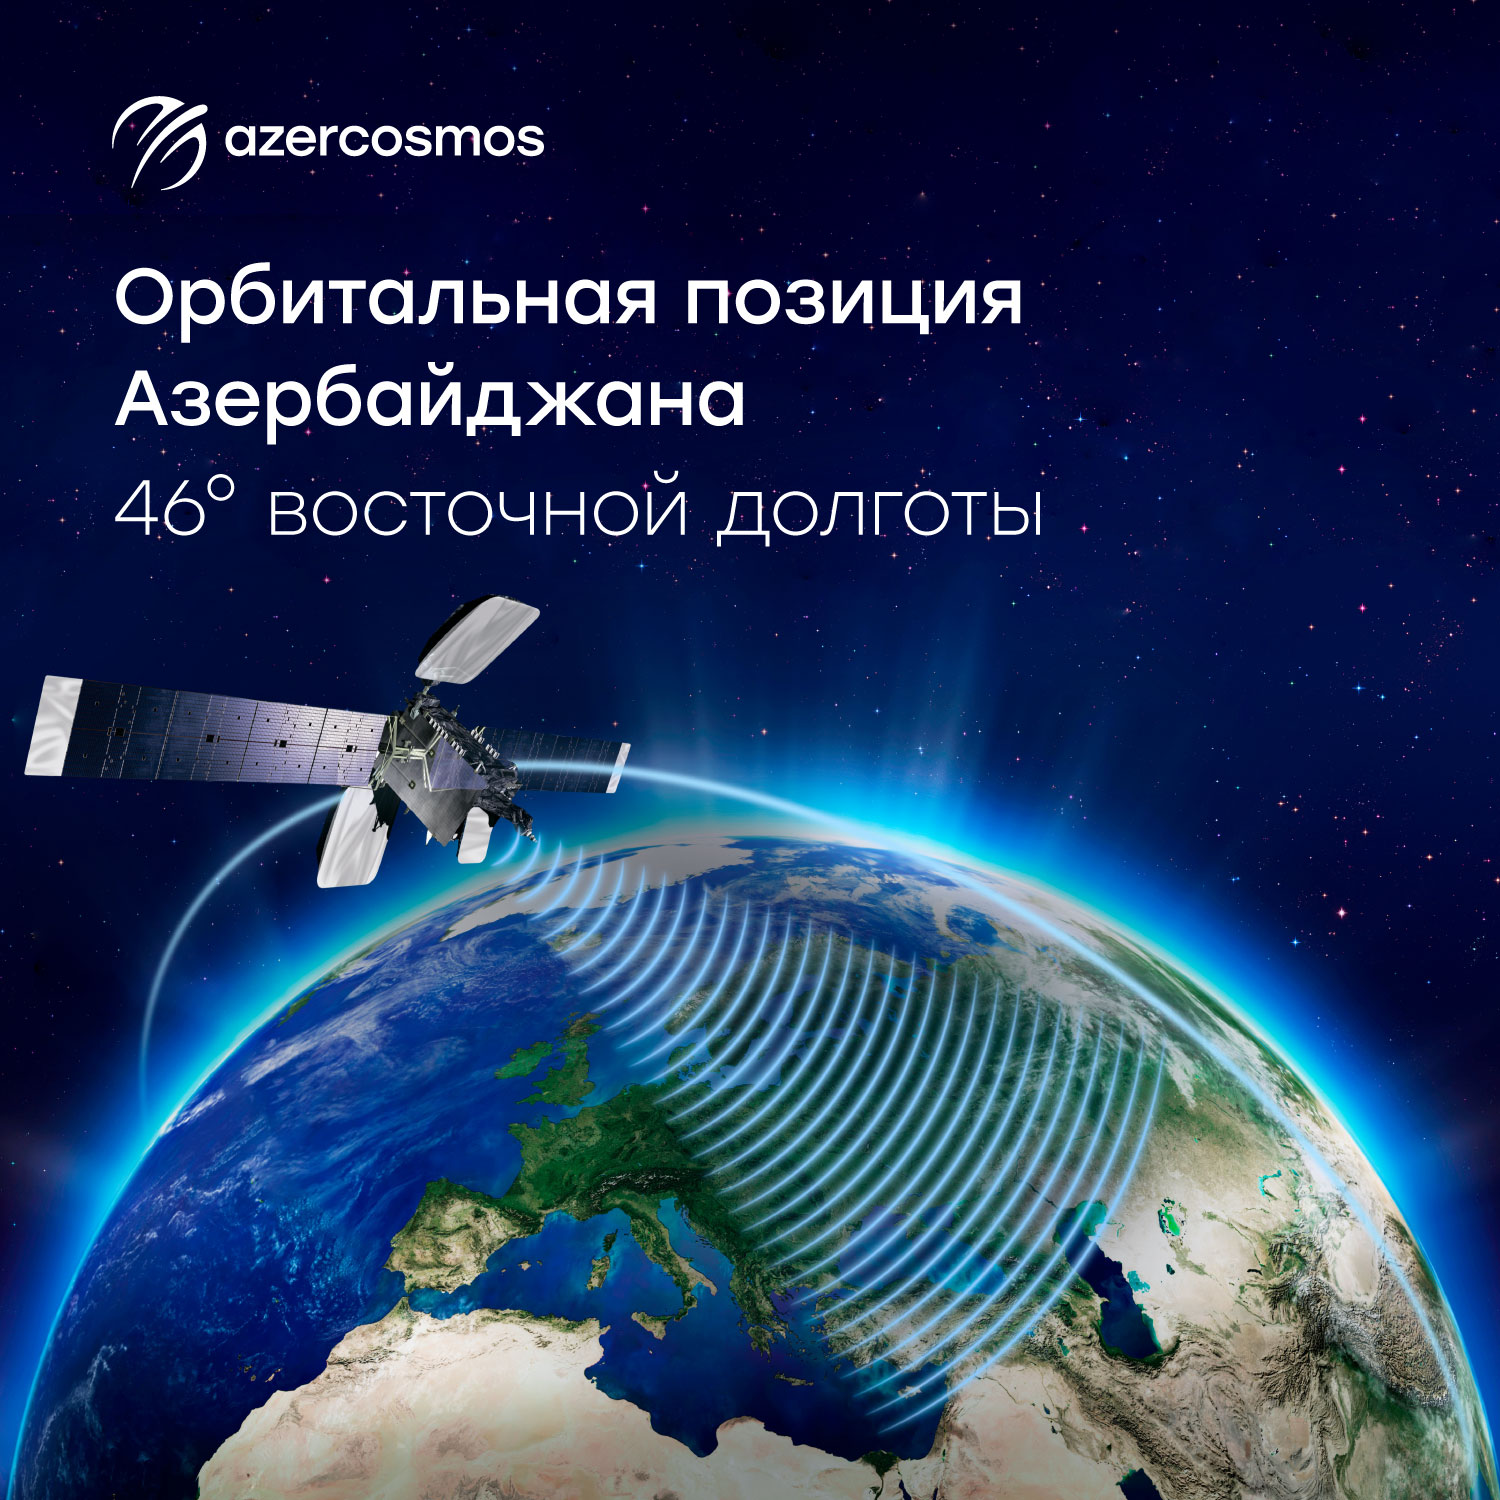 У Азербайджана уже собственная орбитальная позиция в космосе